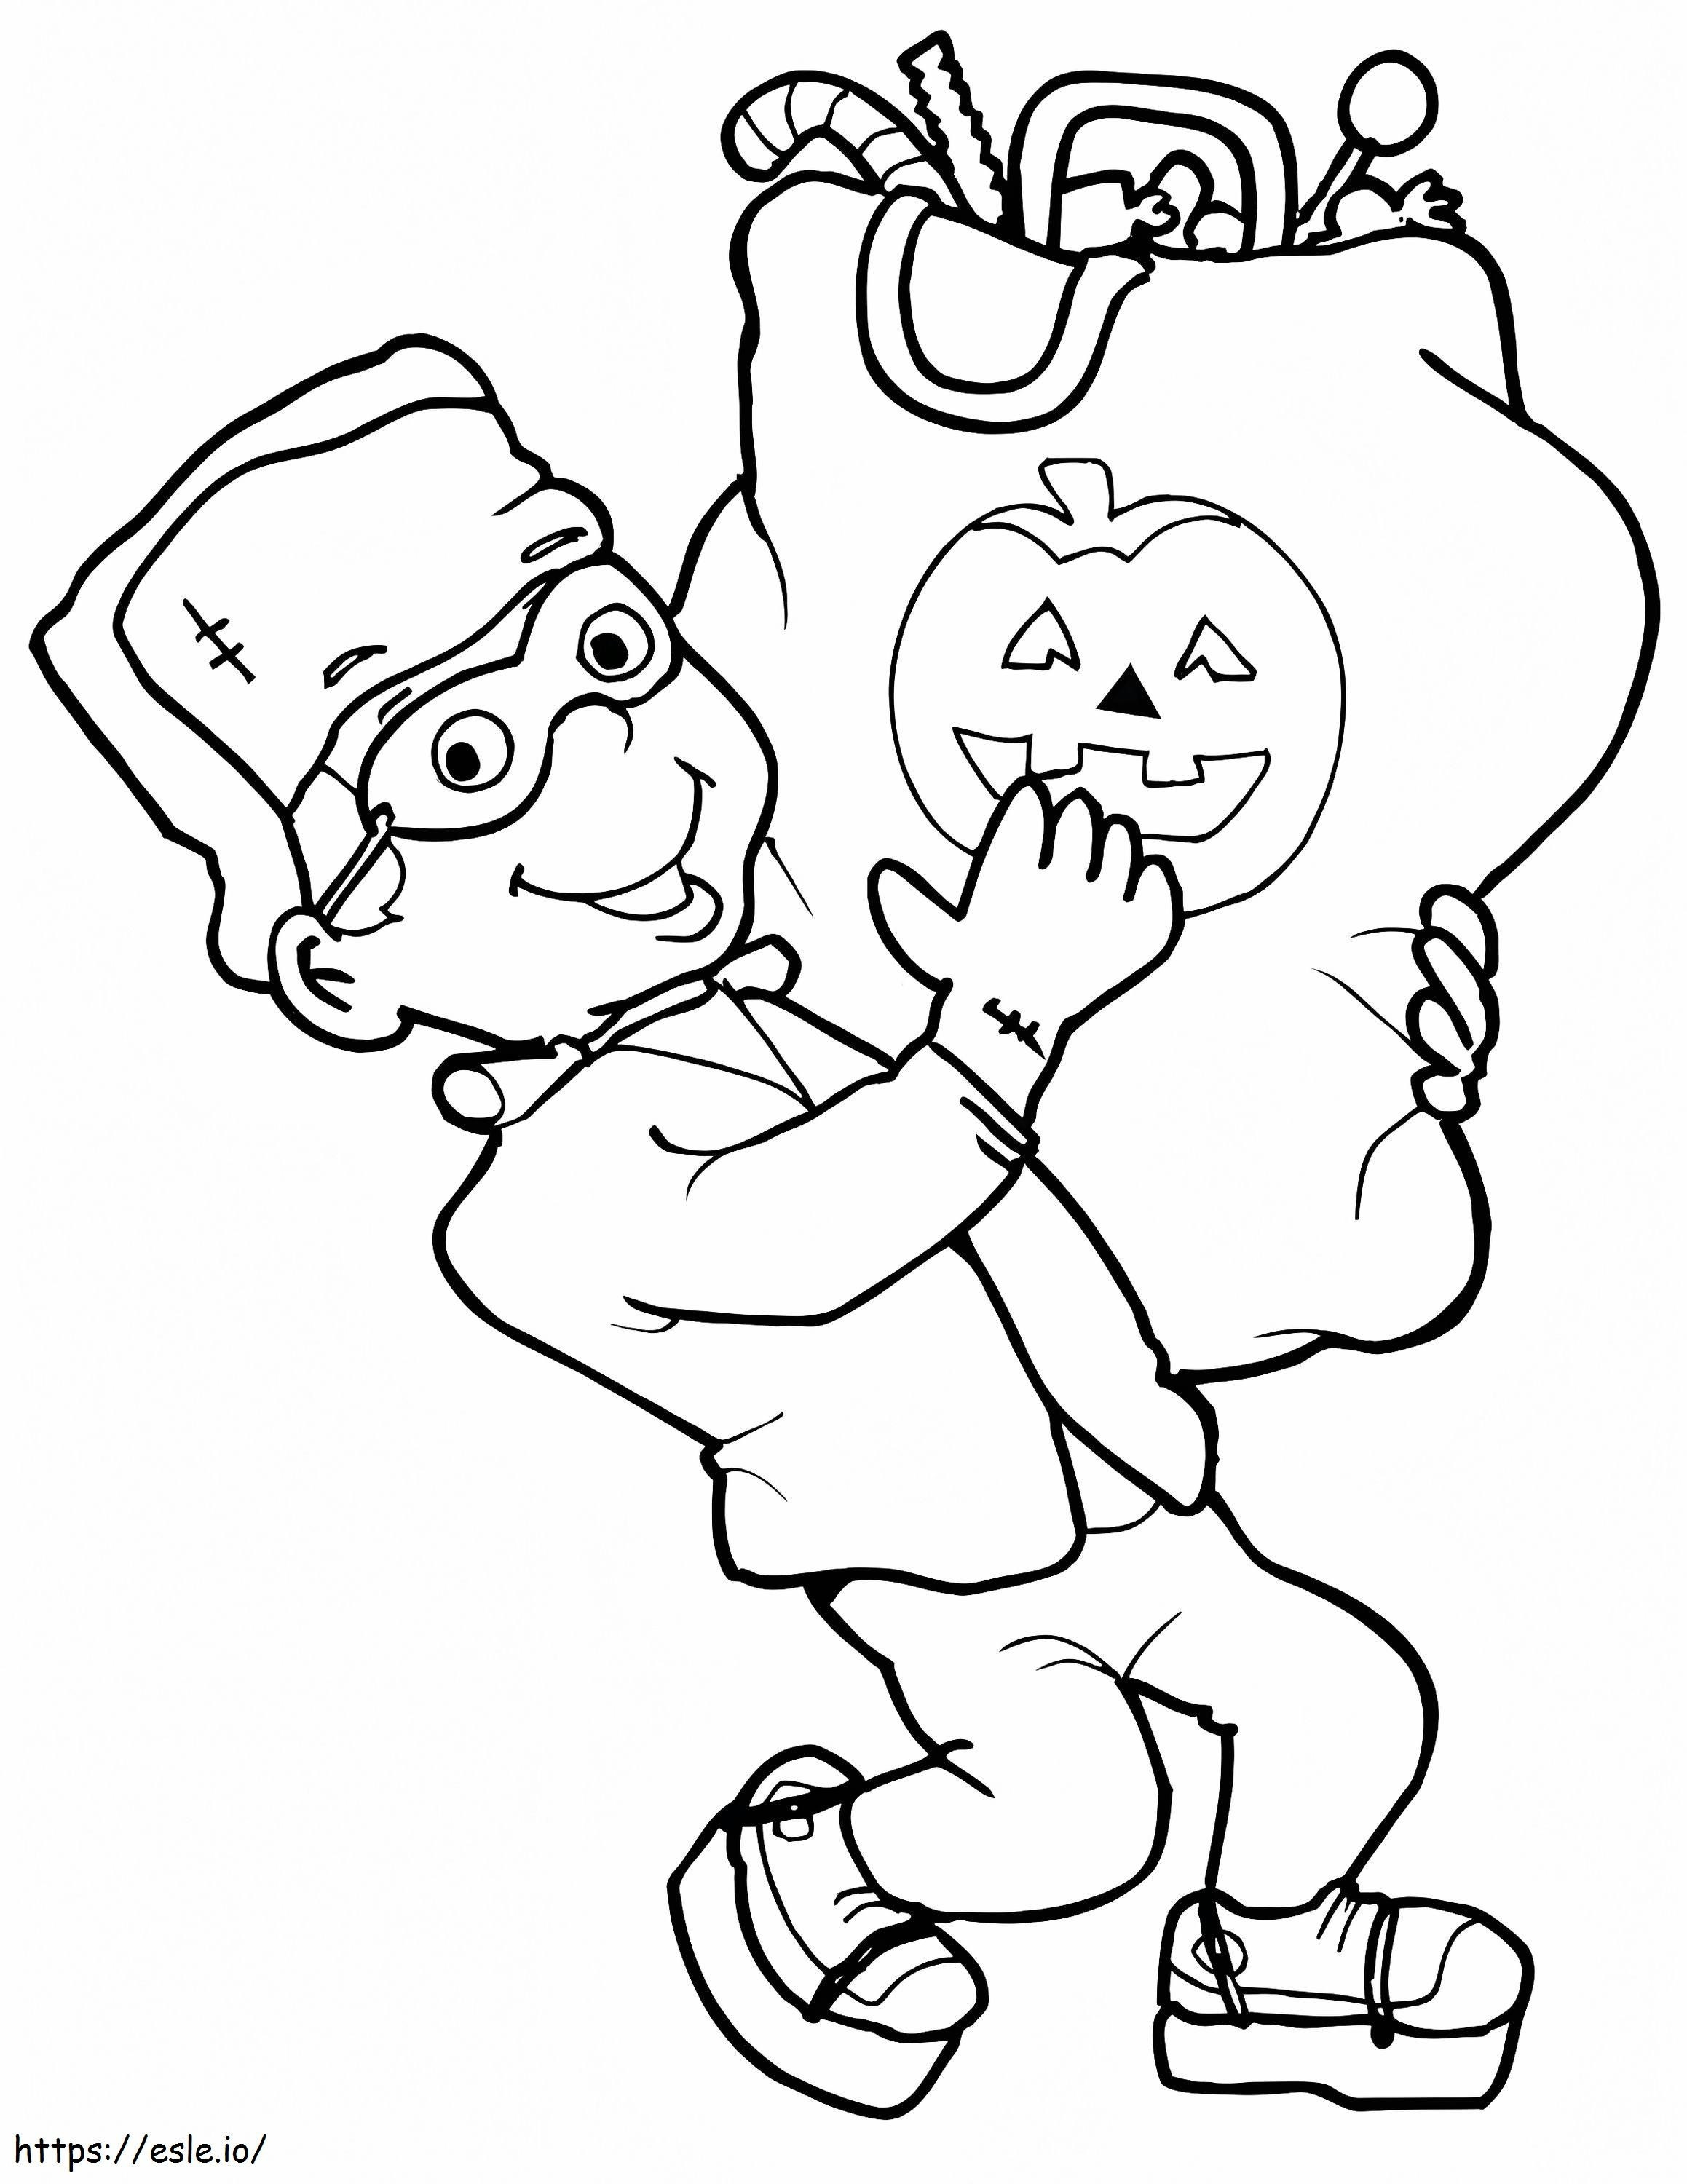 Coloriage  Coloriage Frankenstein Petit Avec Sac Plein De Bonbons Dans Le Petit Dessin Animé Halloween Frankenstein A Imprimer à imprimer dessin